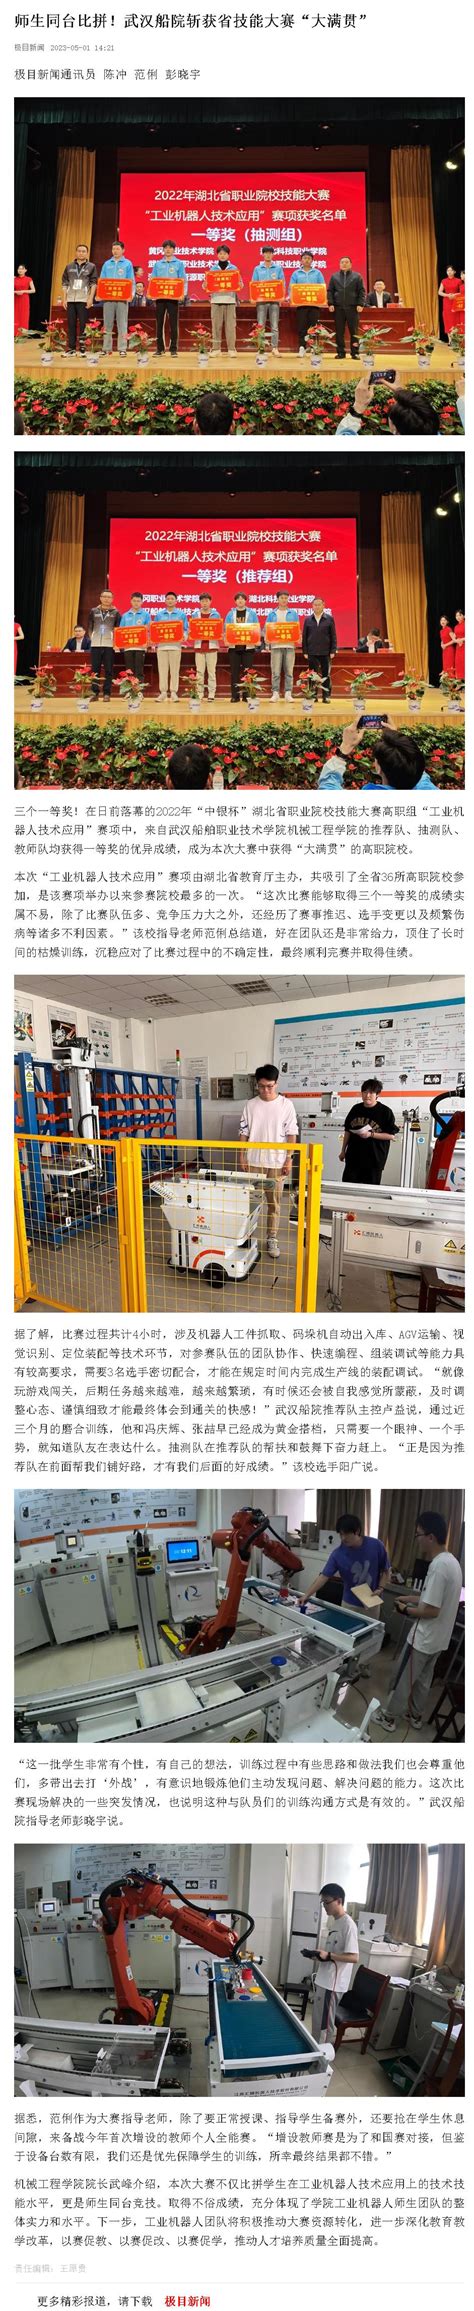 新型冠状病毒疫情期间致武汉船院学子的倡议书-武汉船舶职业技术学院